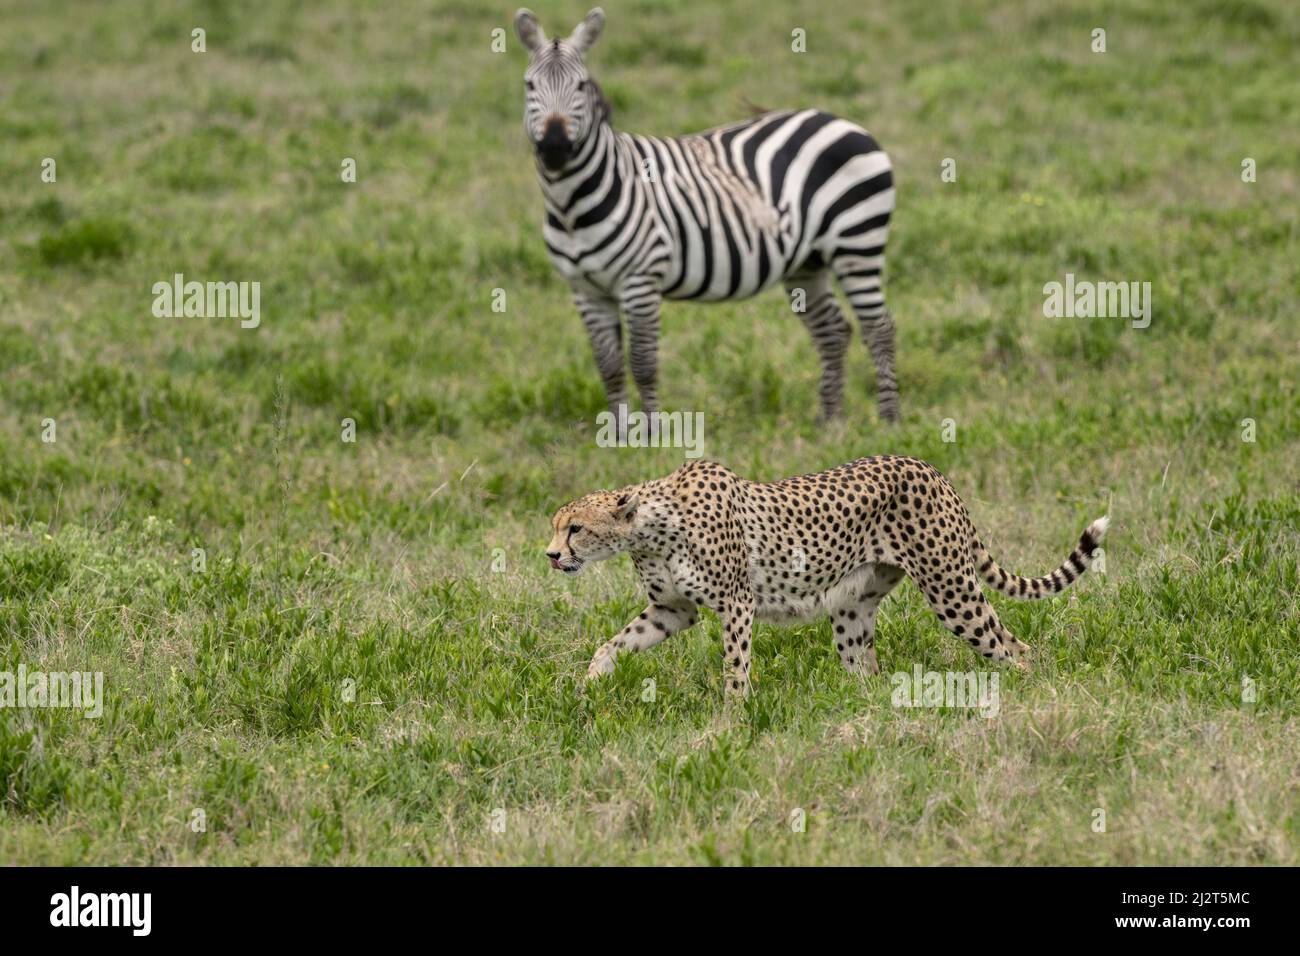 Zebras watching a cheetah, Tanzania Stock Photo